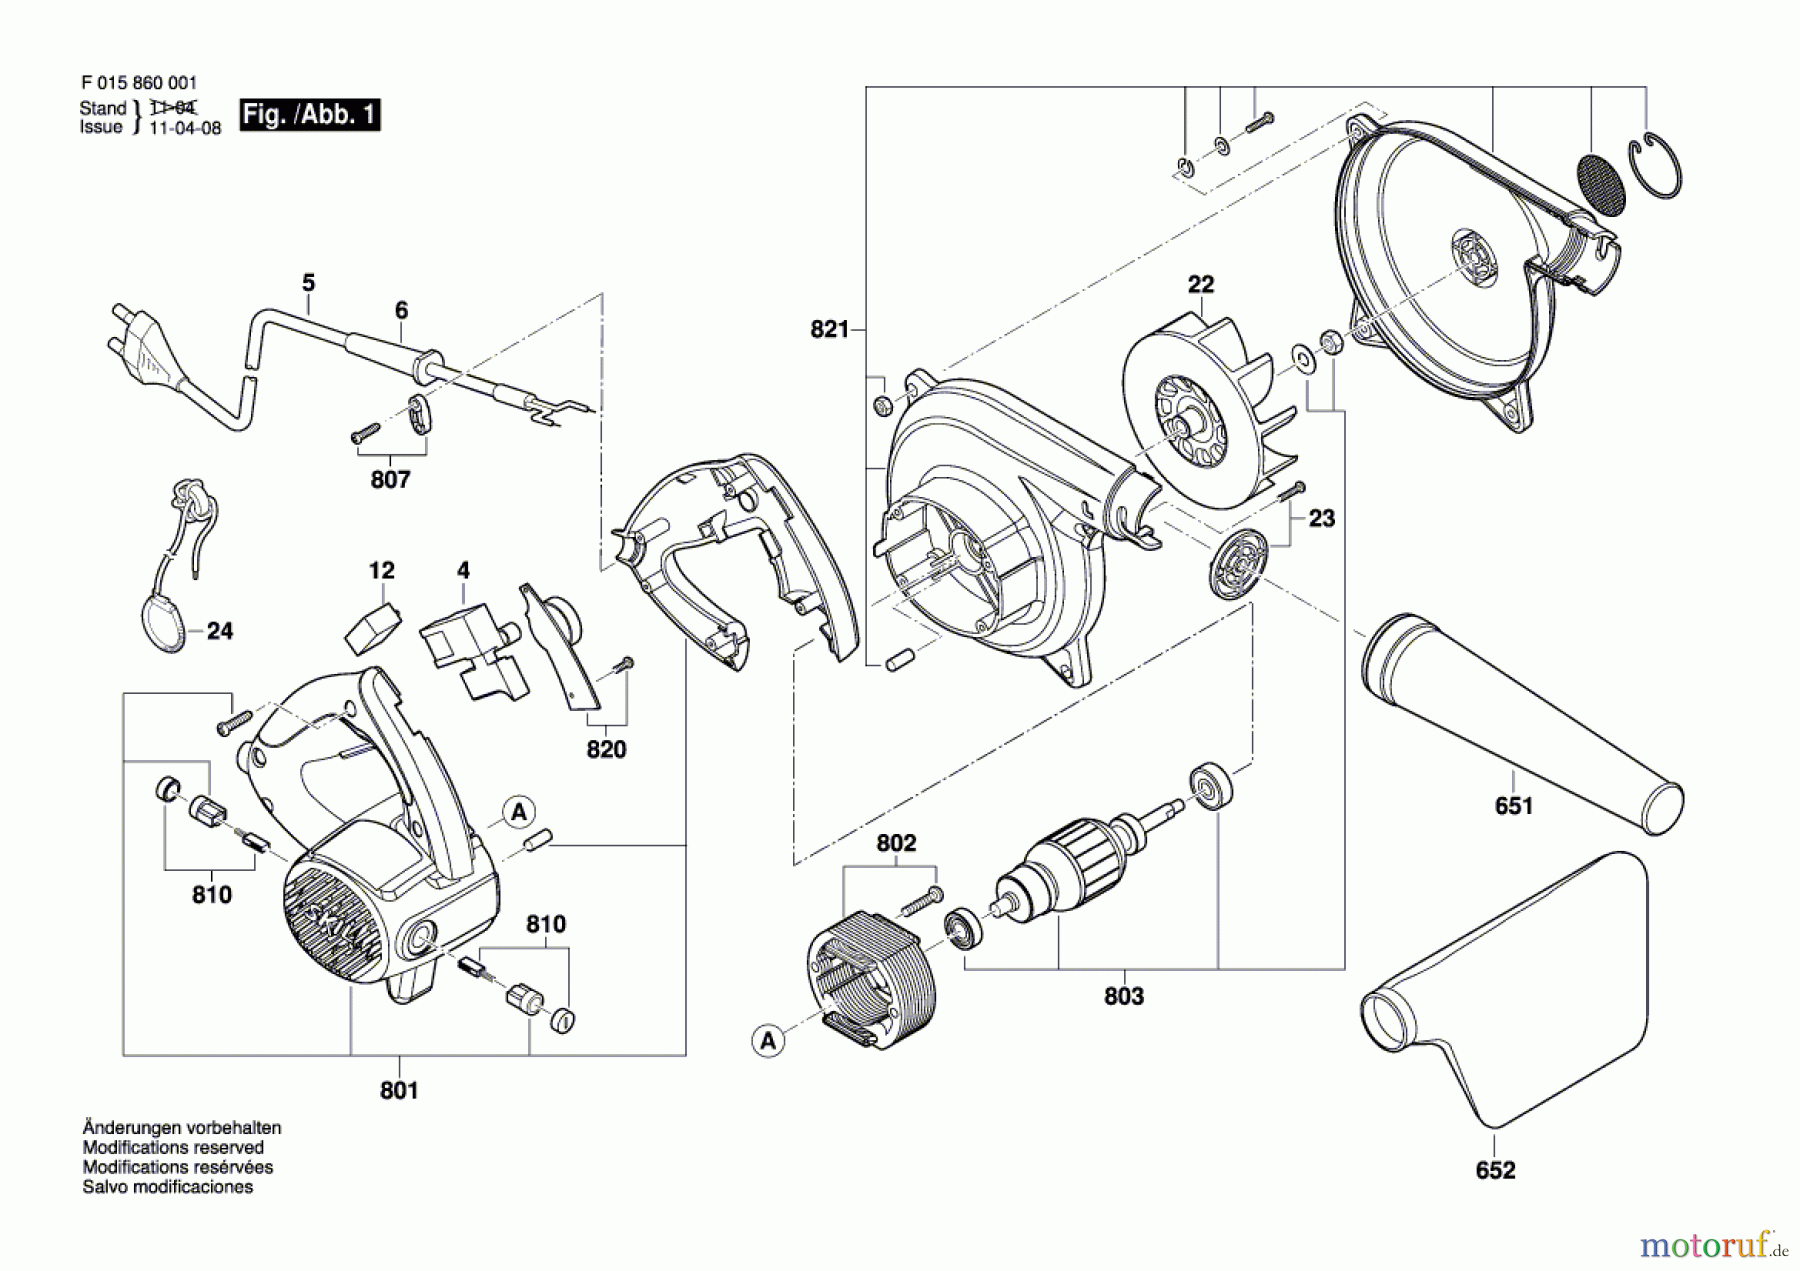  Bosch Werkzeug Druckgebläse 8600 Seite 1